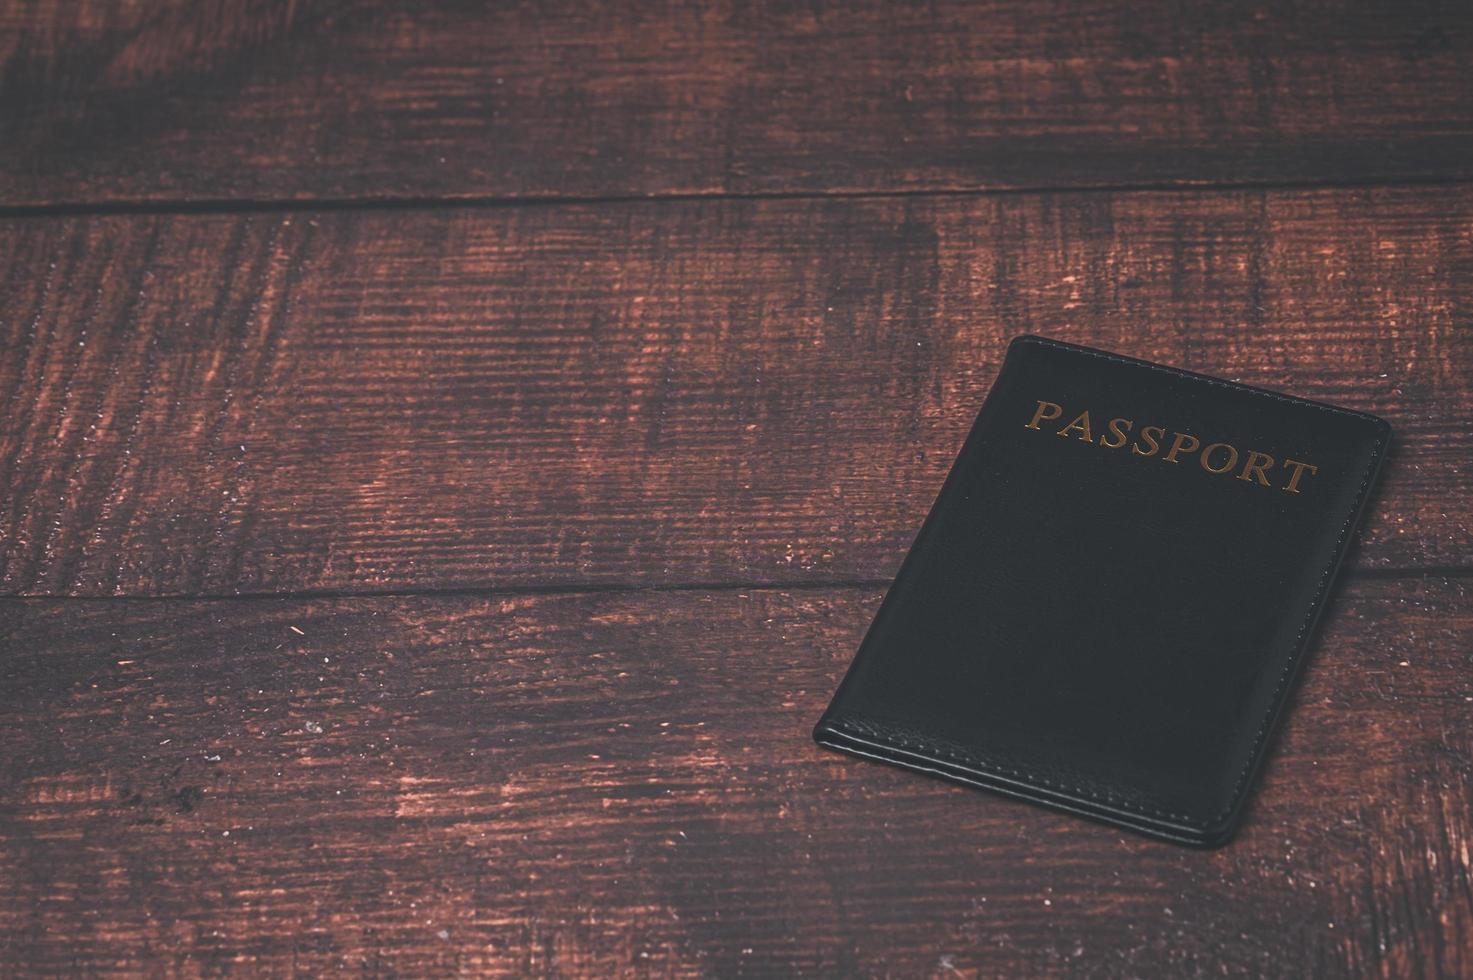 passaporte prepare-se para viajar ou fazer negócios no exterior foto